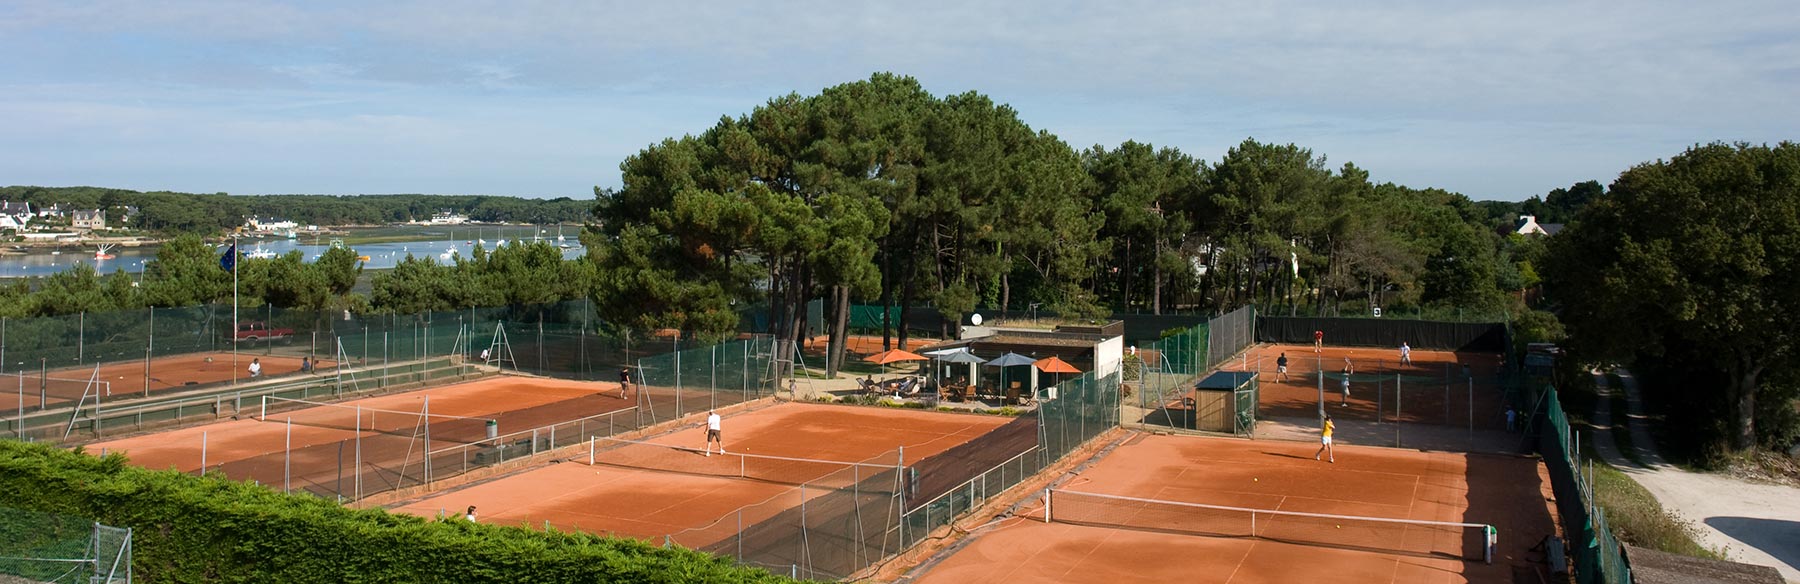 Vue panoramique des courts en terre battue du Tennis Club de Quehan.